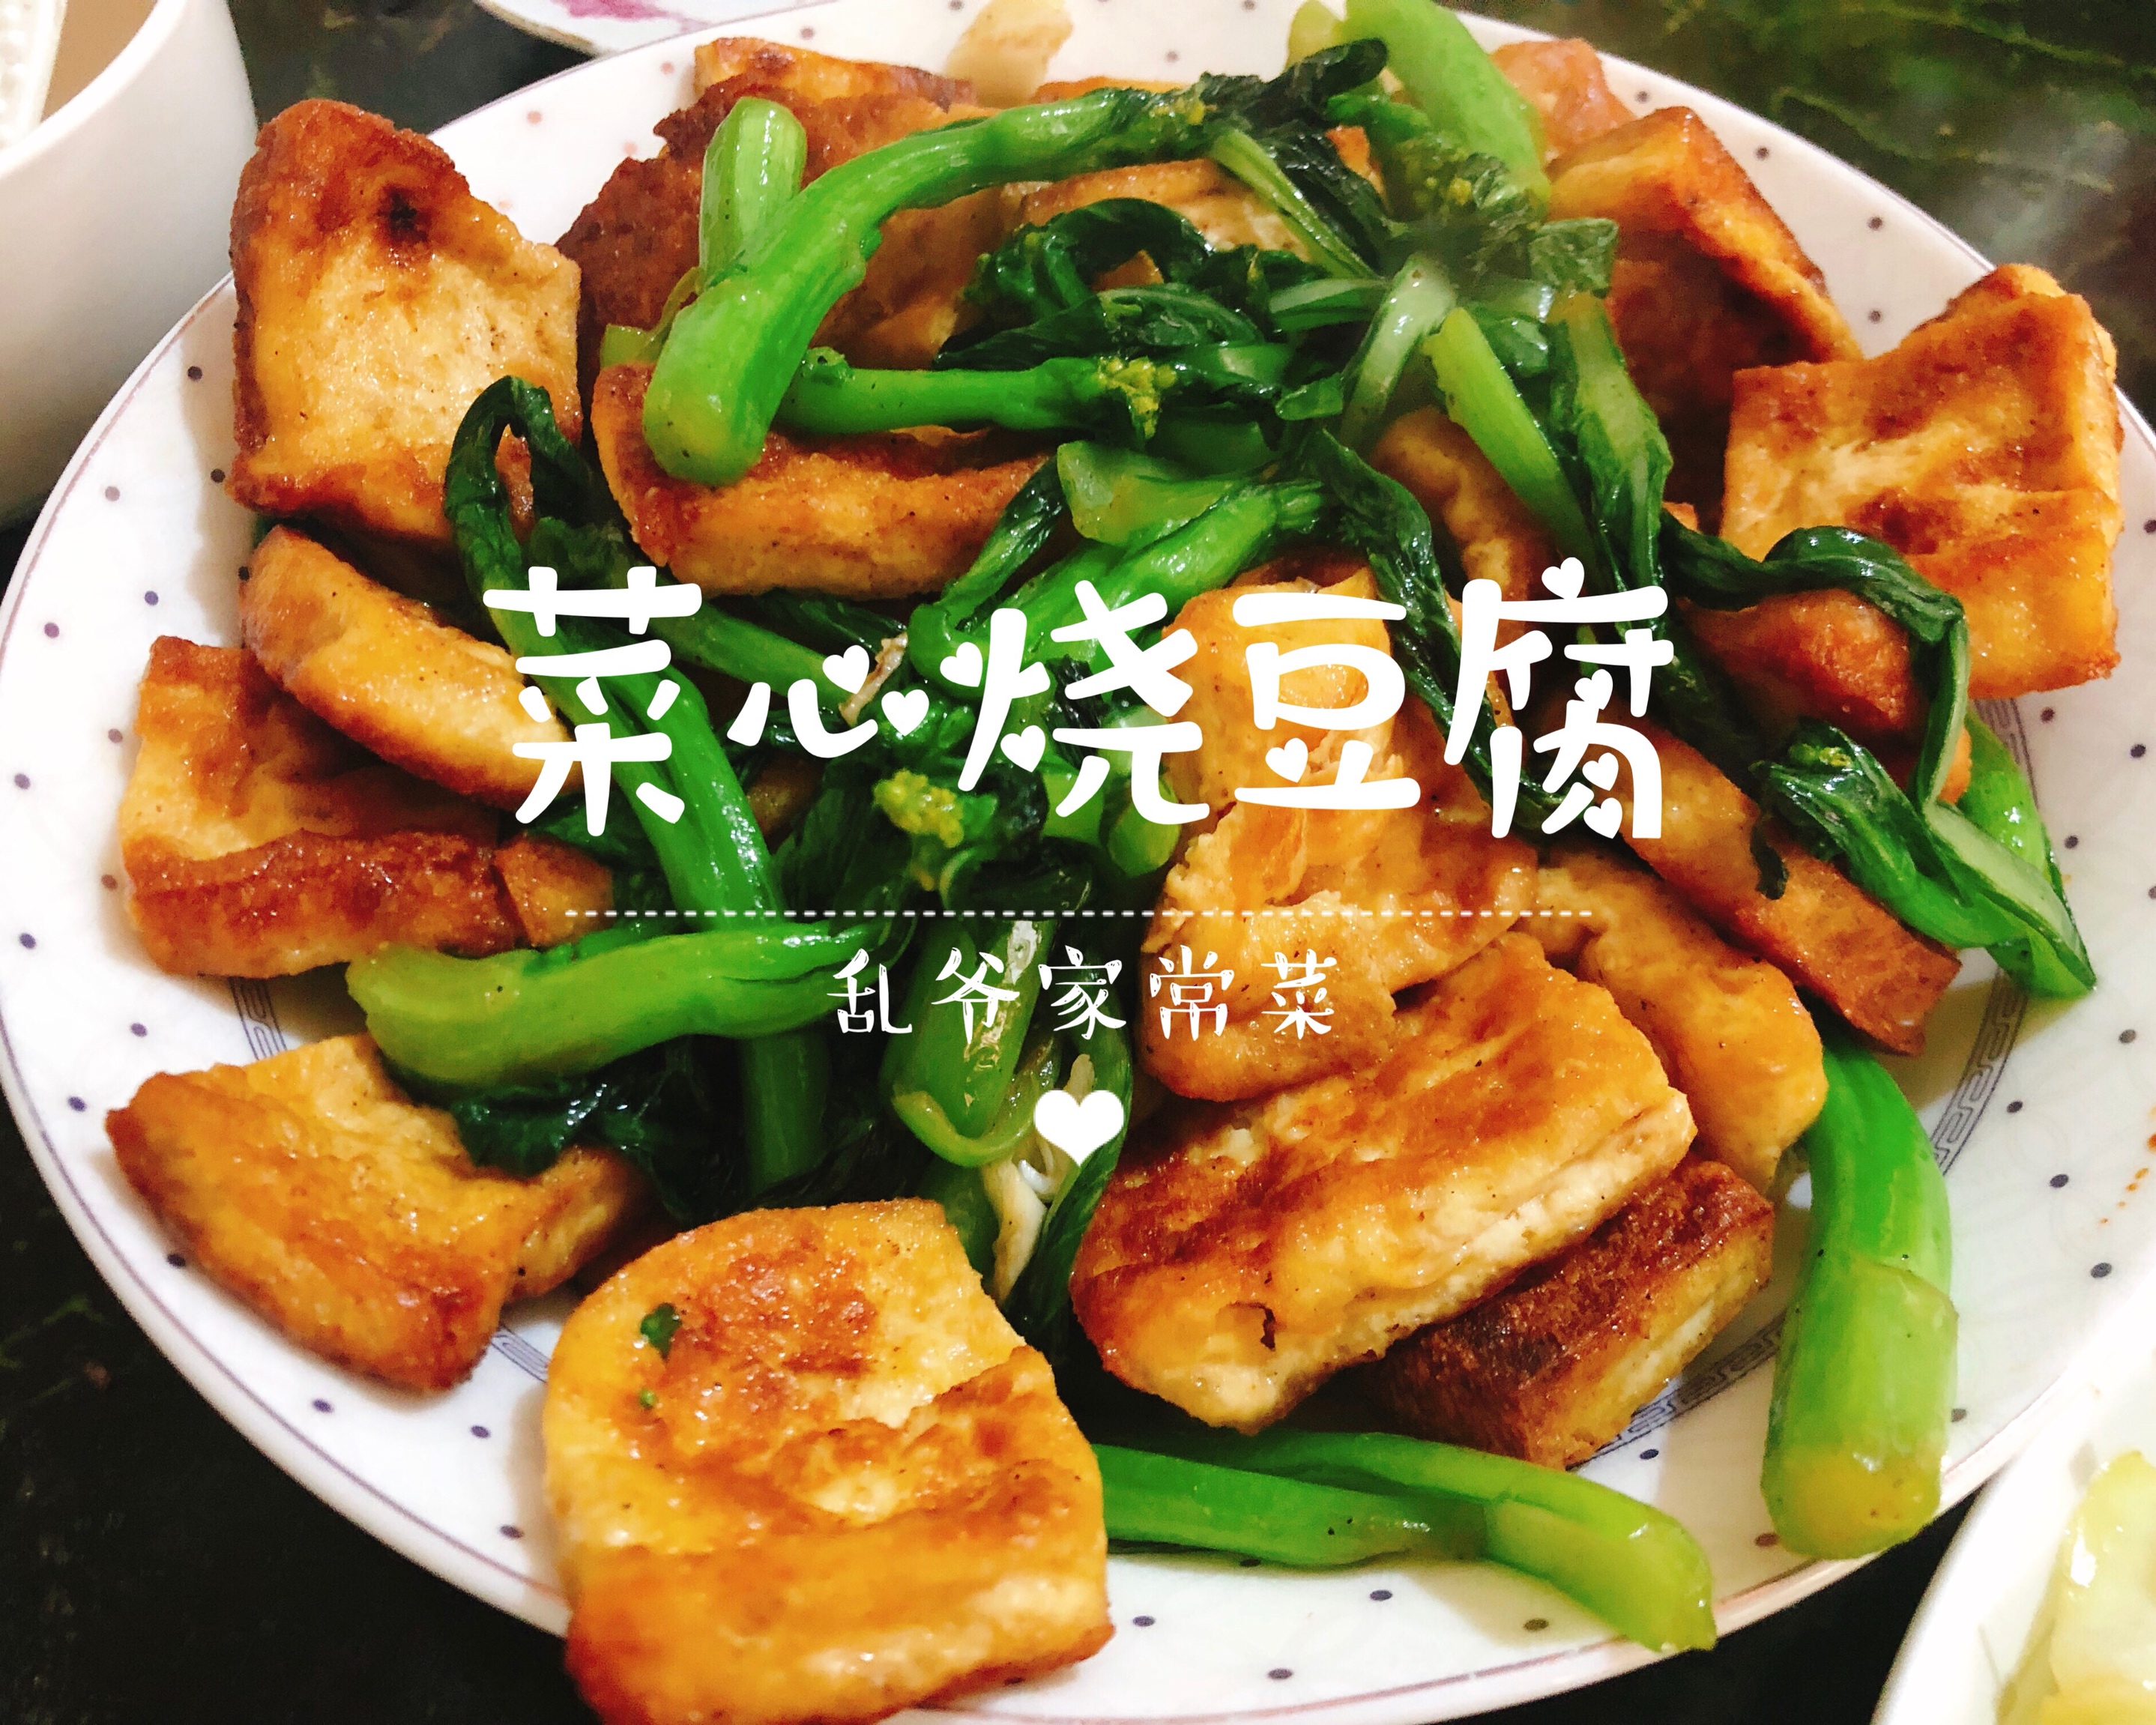 菜心烧豆腐 煎豆腐这样吃的做法